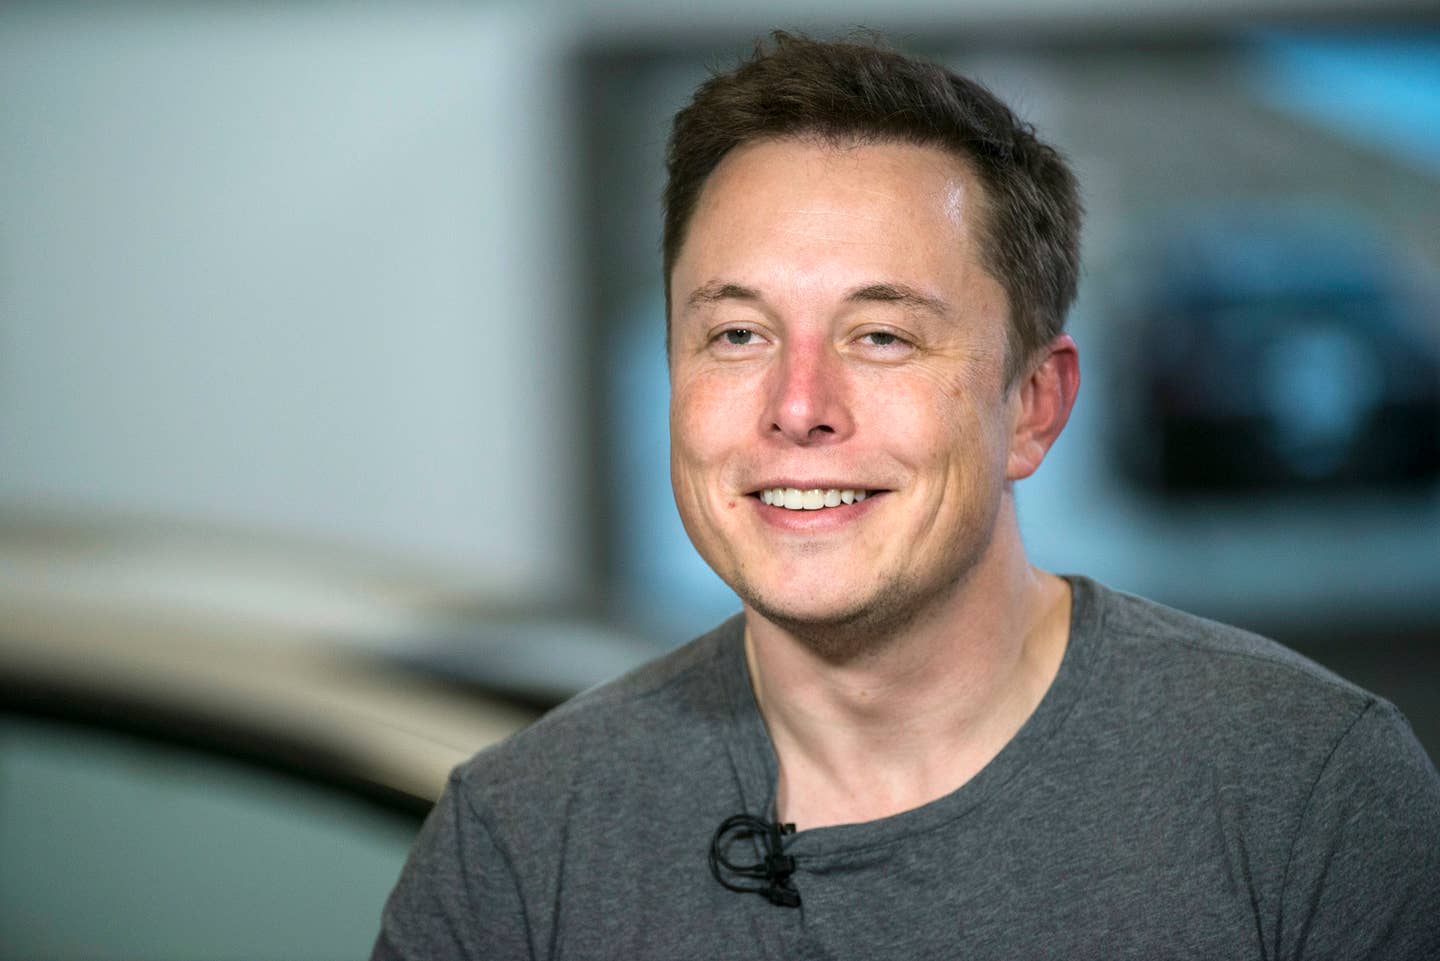 Highlights From Elon Musk’s Reddit AMA